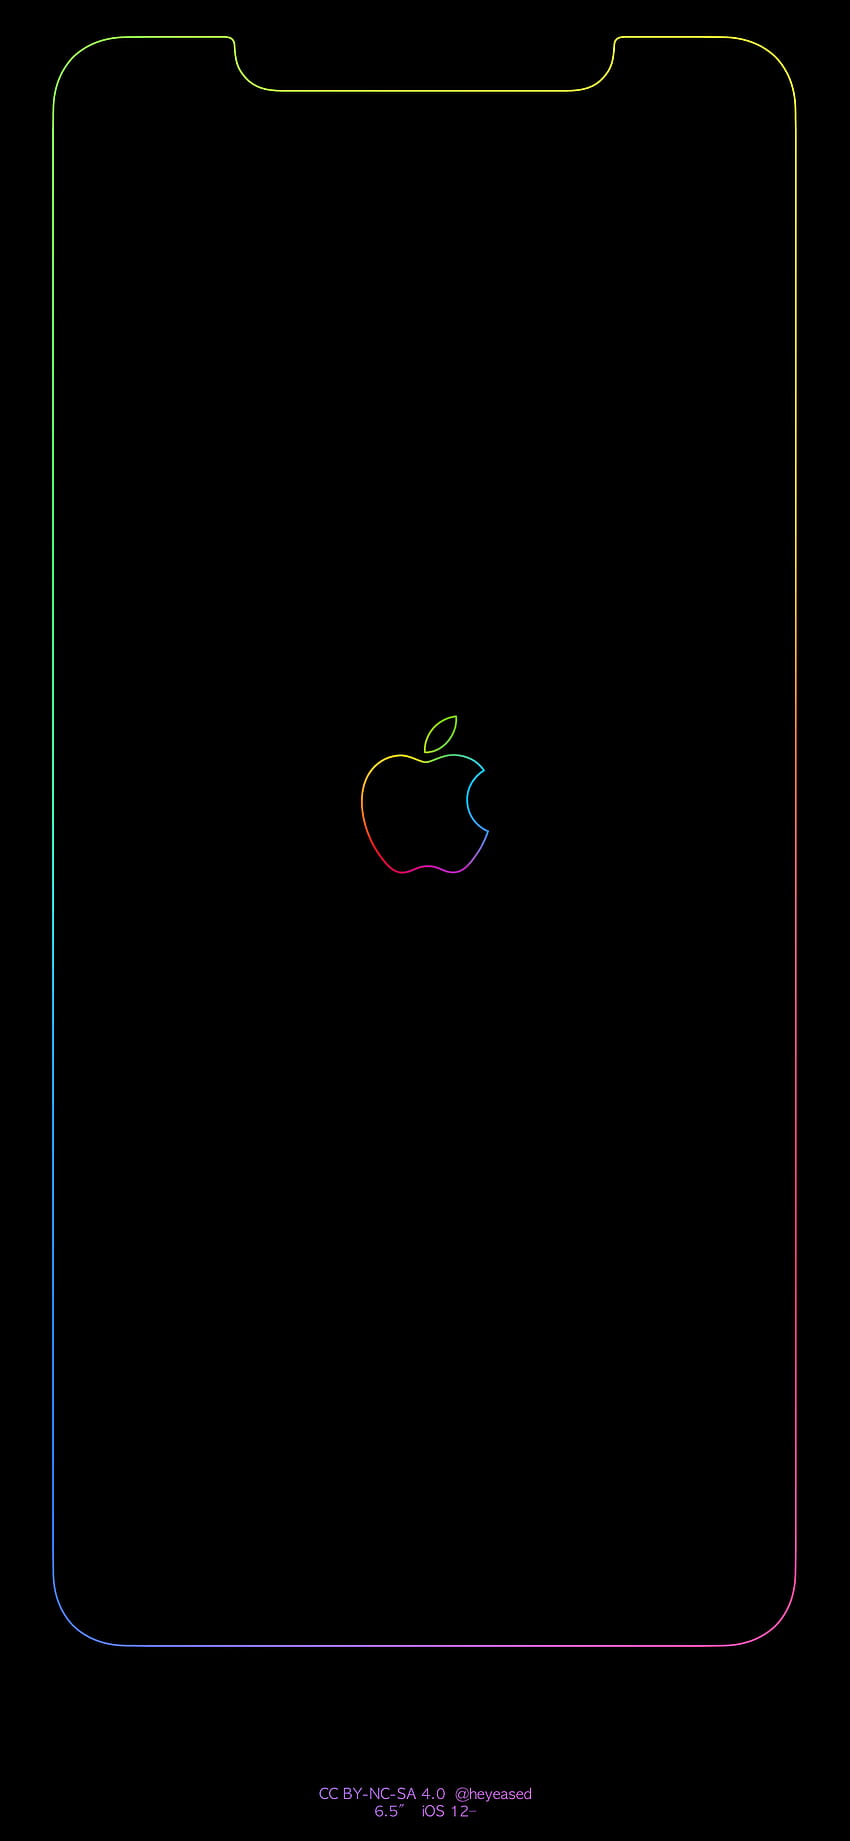 レインボー ボーダー & アップル ロゴ iPhone Imgur リンク : iphone, ボーダー HD電話の壁紙